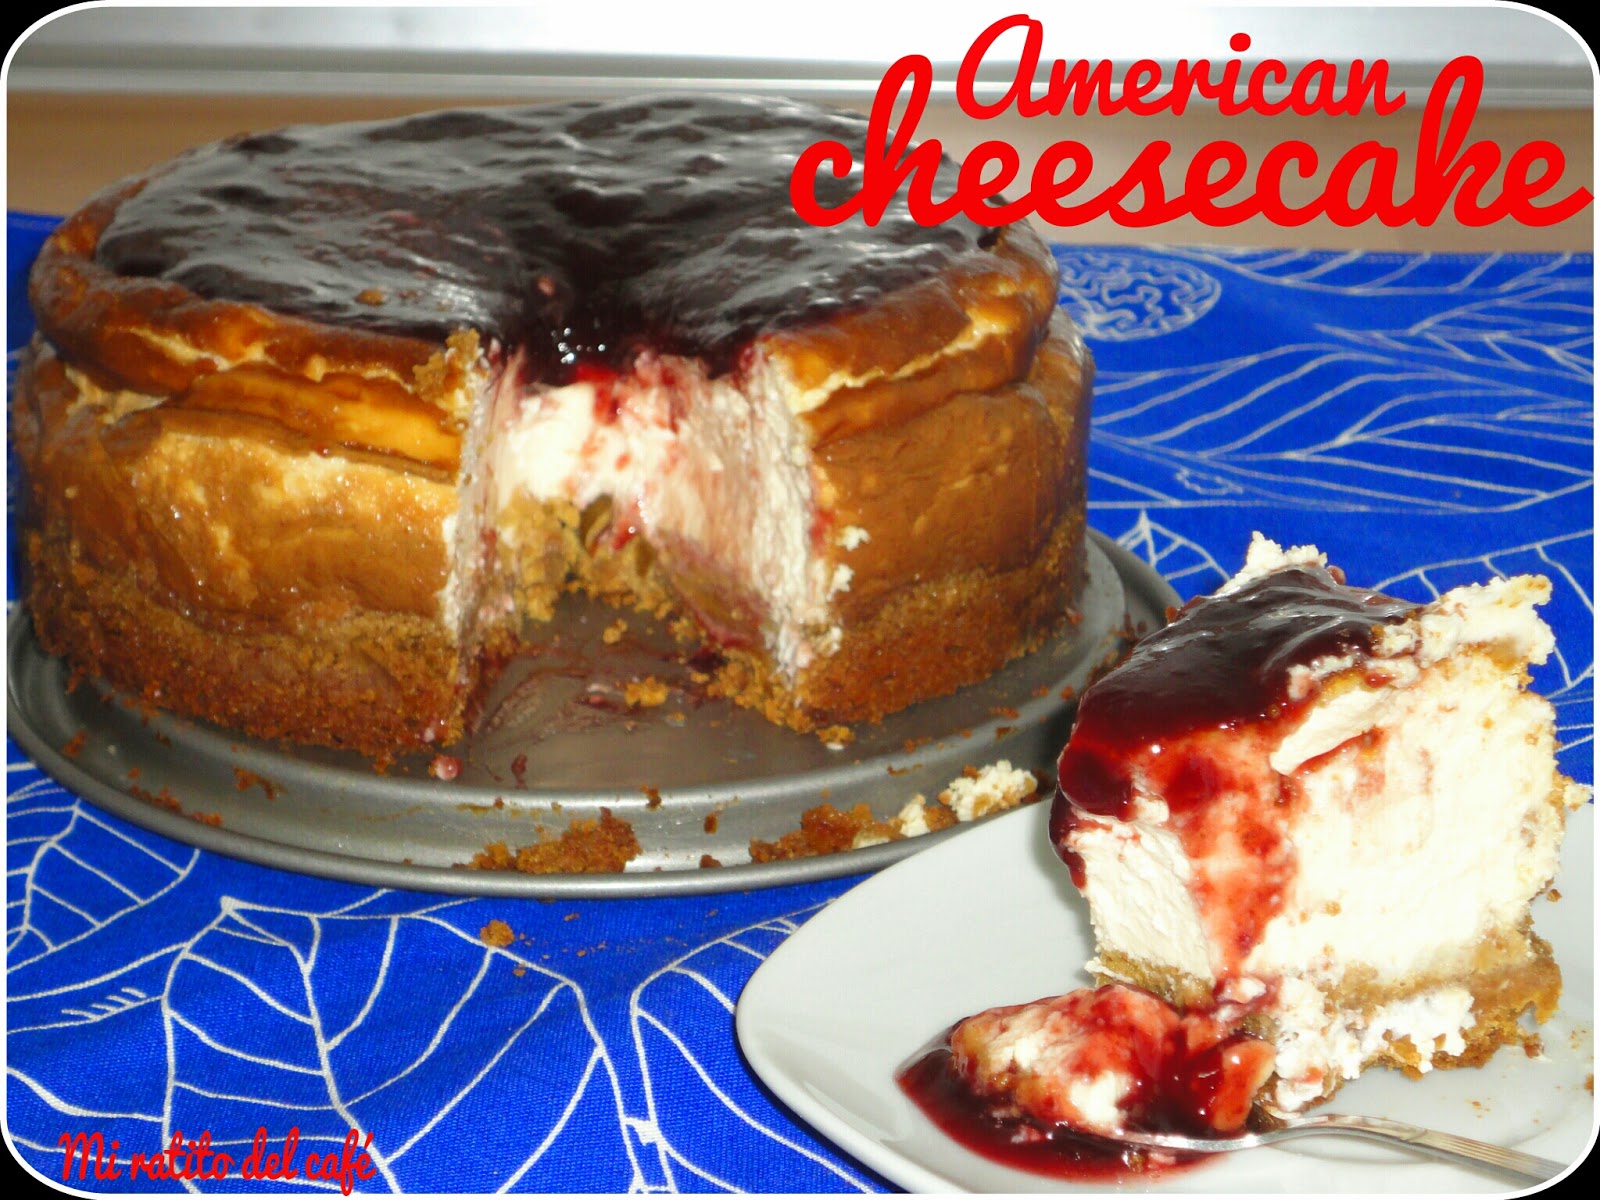 American Cheesecake
